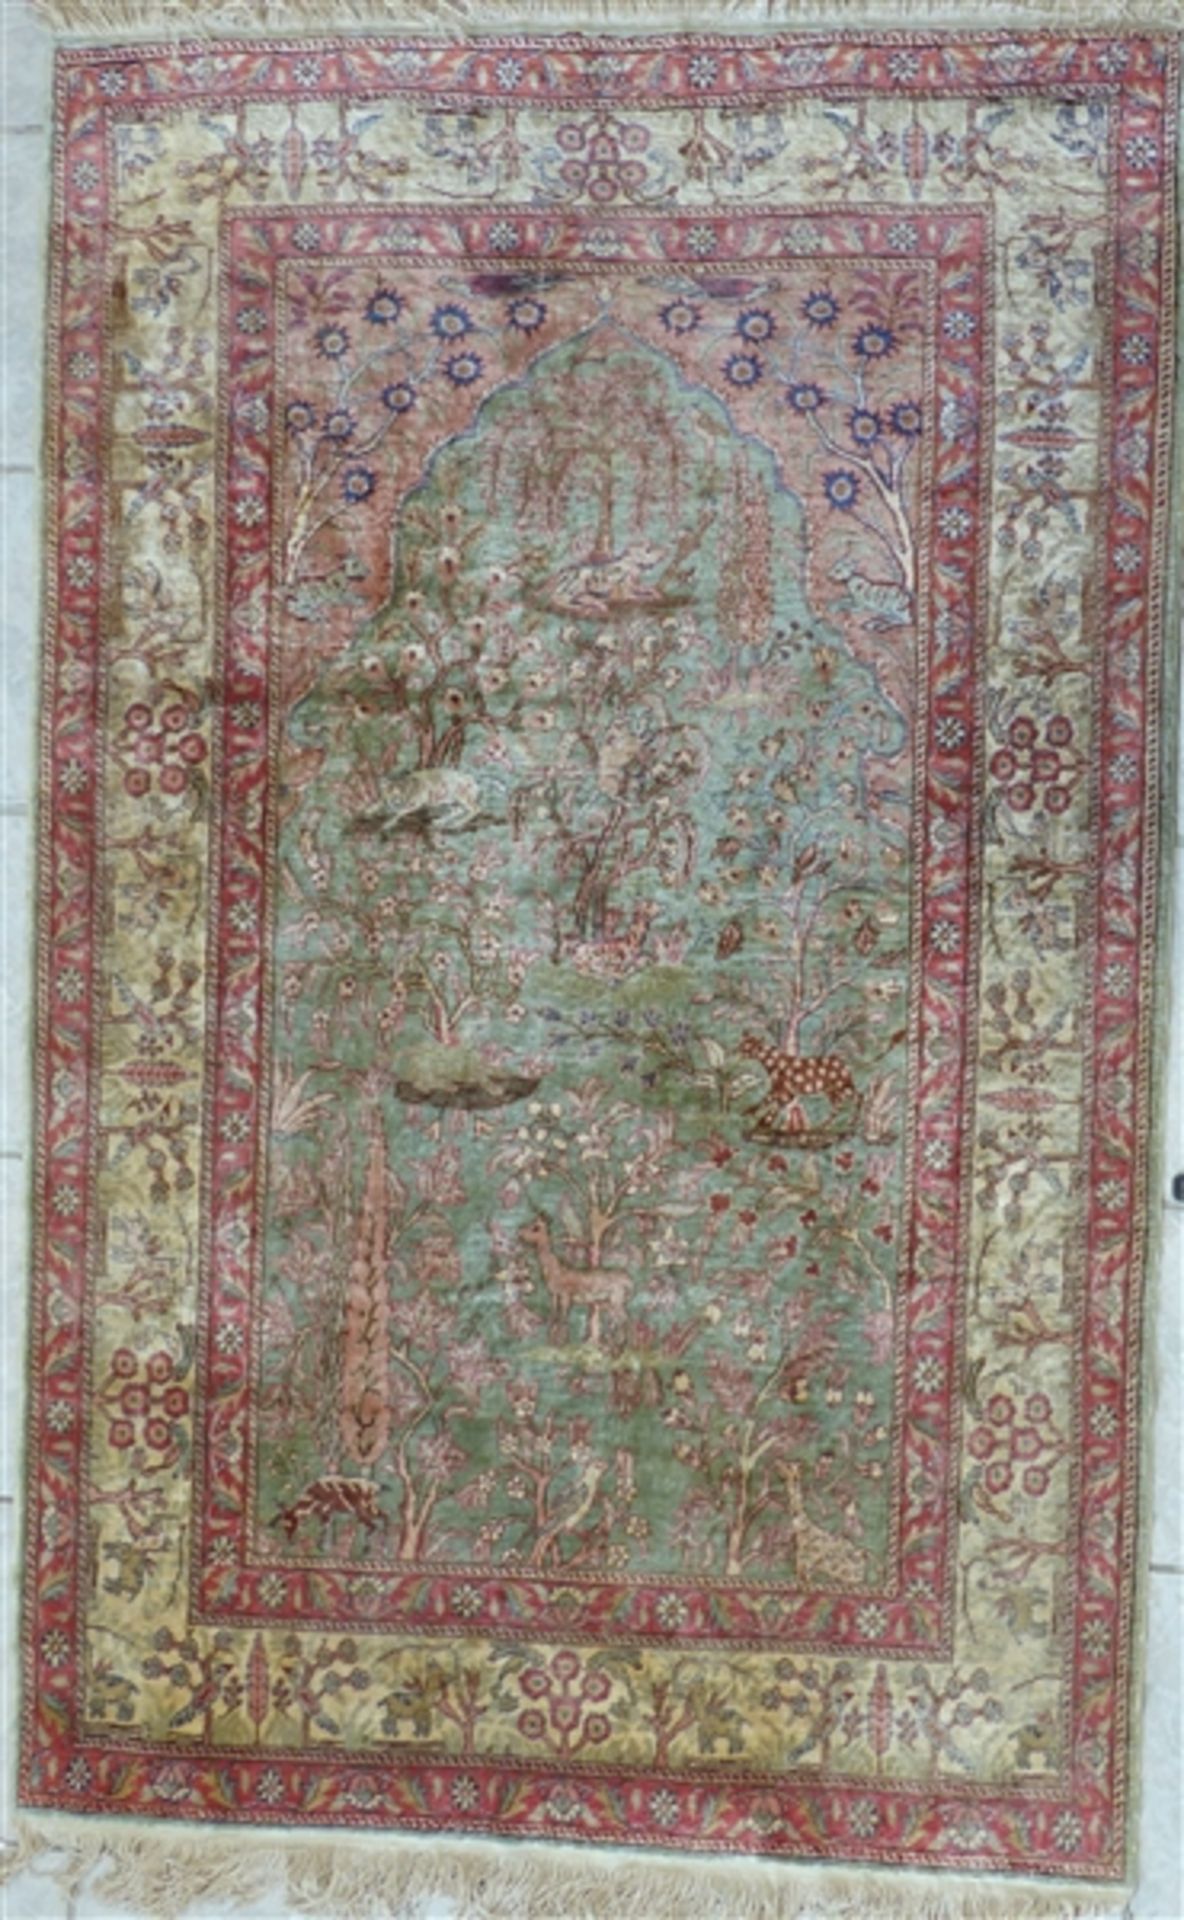 Kayseri Türkei, Seide, pastellfarben, Tier- und Baummotive, 160 x 102 cm